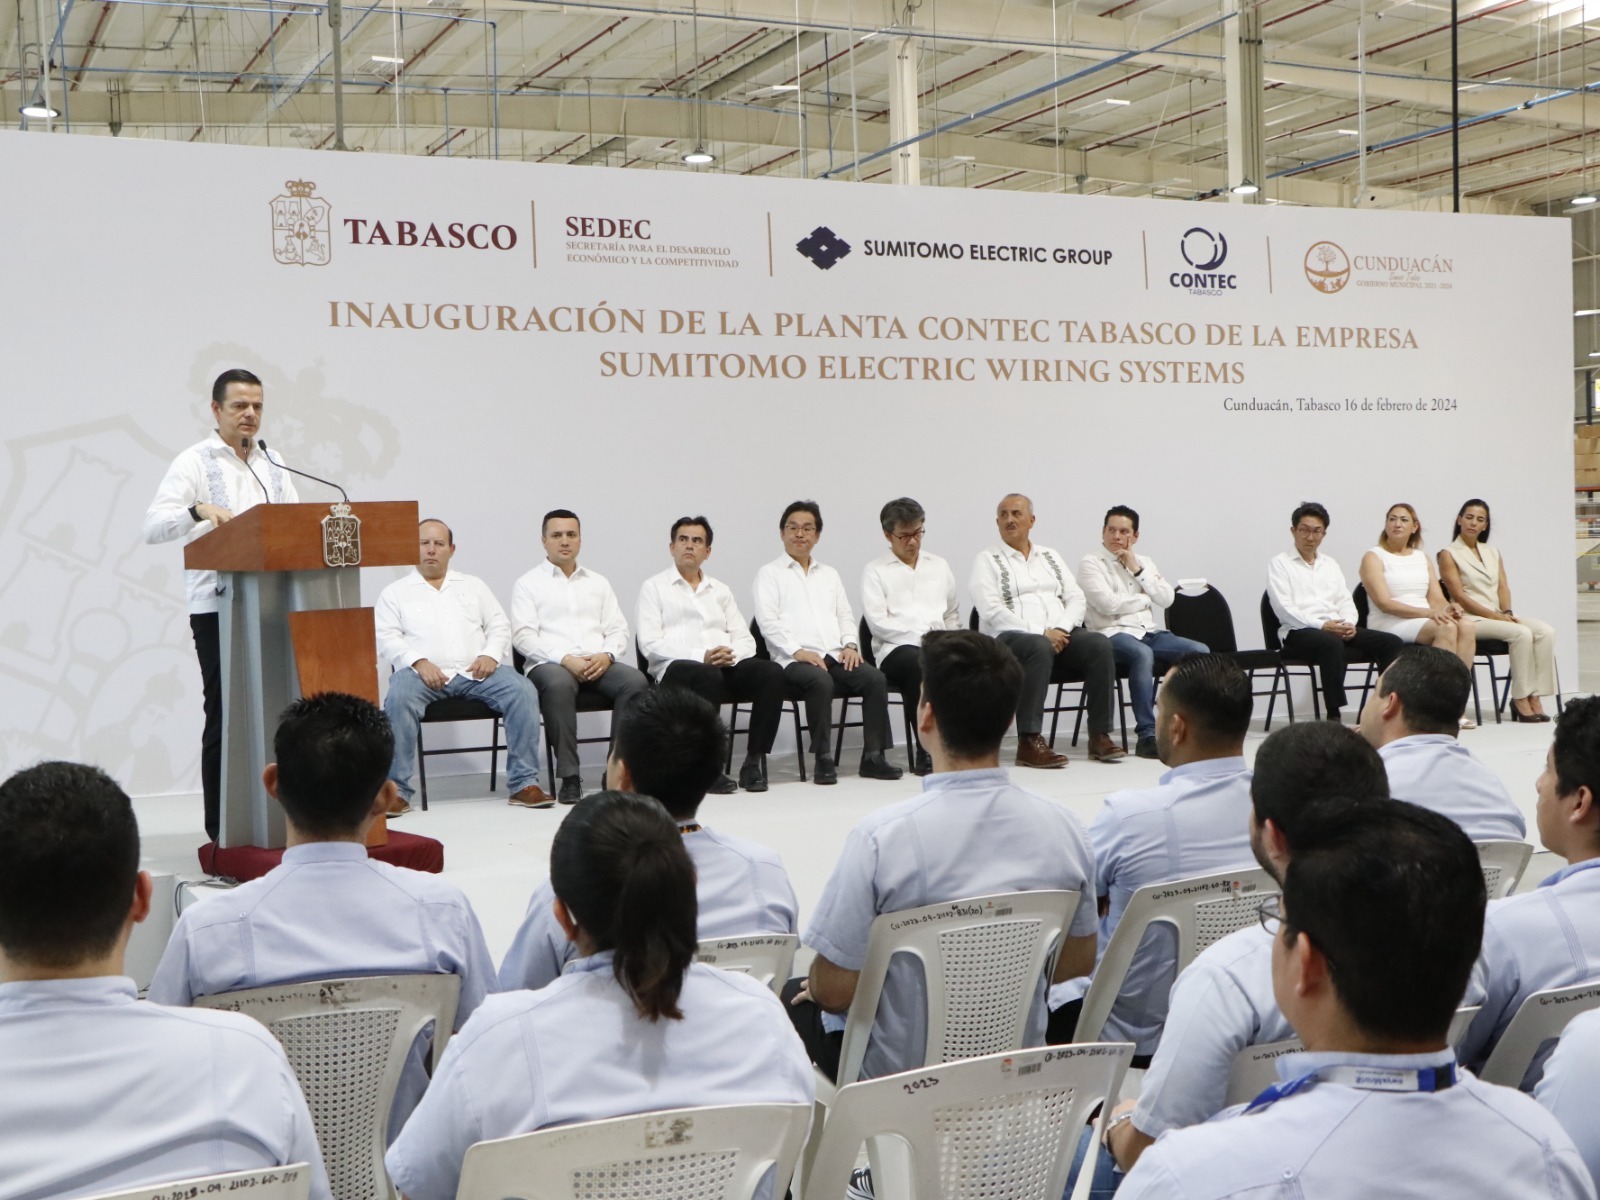 Atractivo para el nearshoring: Llega a Tabasco la planta automotriz Sumitomo Electric Wiring Systems